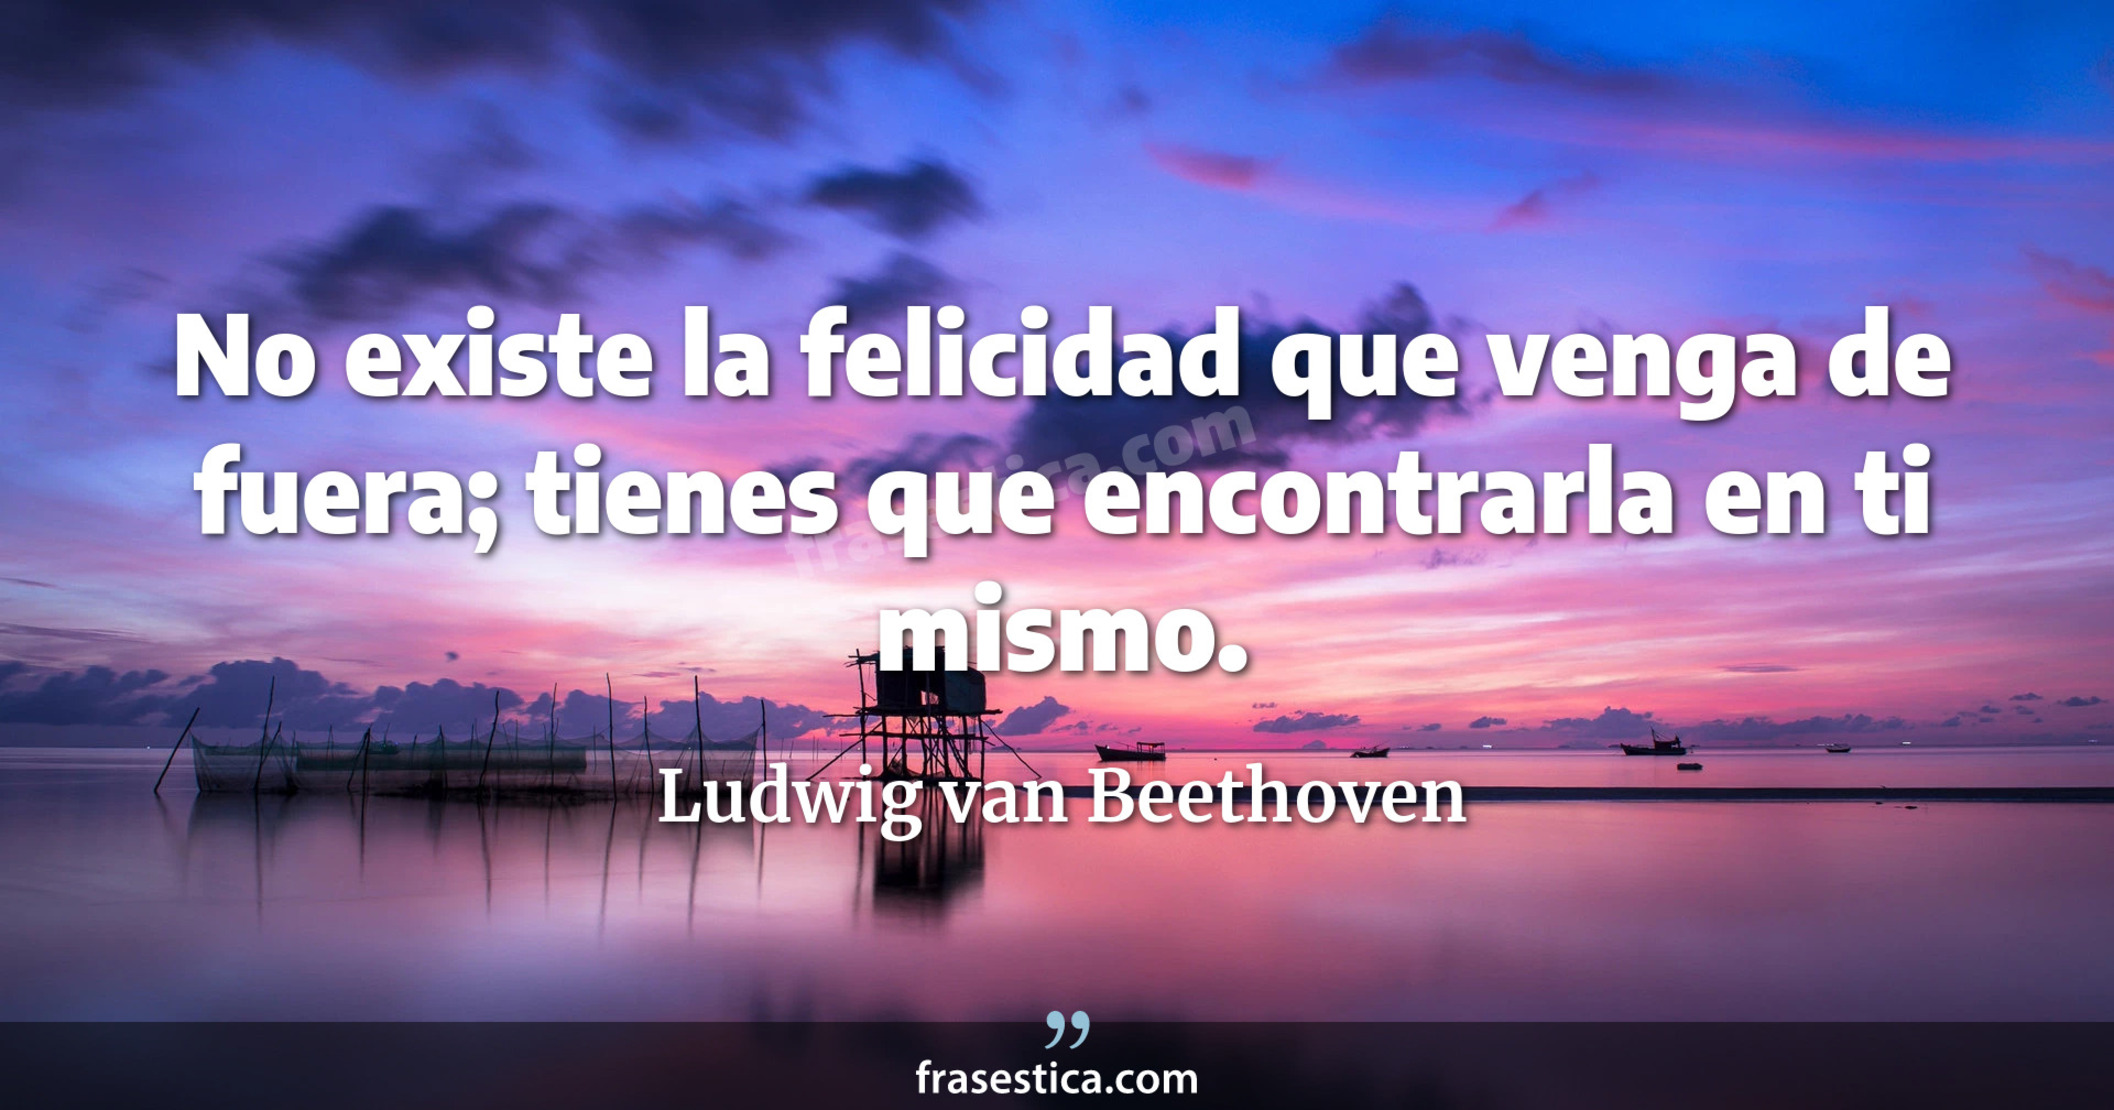 No existe la felicidad que venga de fuera; tienes que encontrarla en ti mismo. - Ludwig van Beethoven